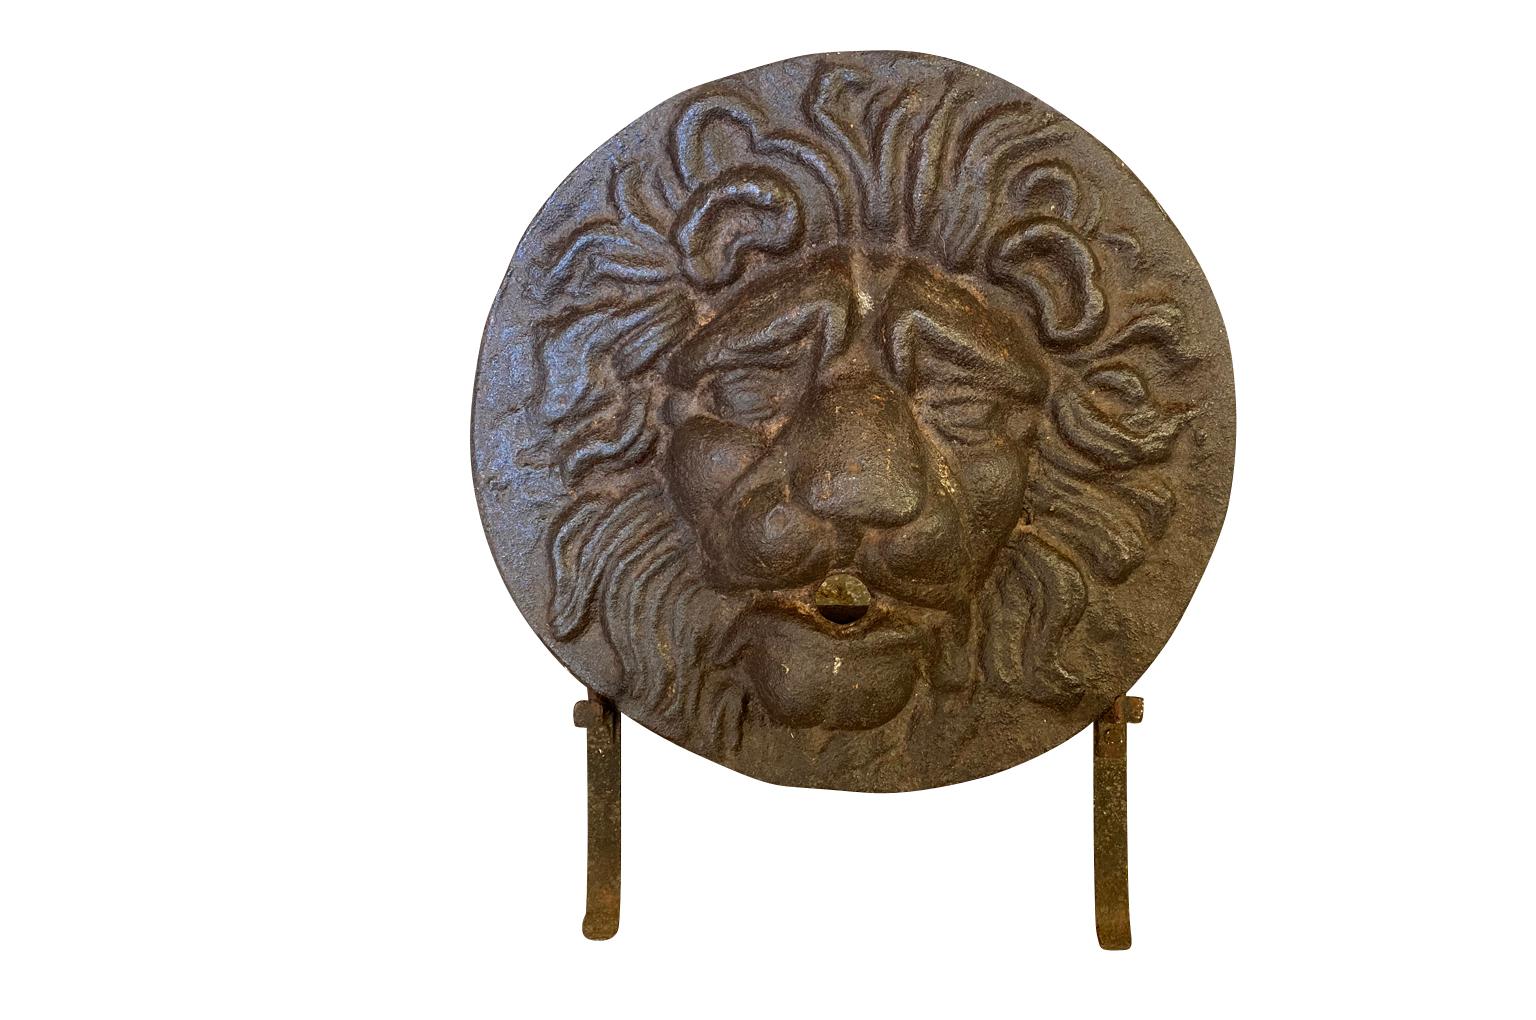 Ein sehr beeindruckender Brunnenkopf aus dem 17. Jahrhundert in Form eines Löwen aus der Zeit Ludwigs XIV. Wunderschön aus Gusseisen gefertigt - jetzt auf seinem Ständer ruhend. Ein auffälliges Akzentstück für jedes Bücherregal oder jede Tischplatte